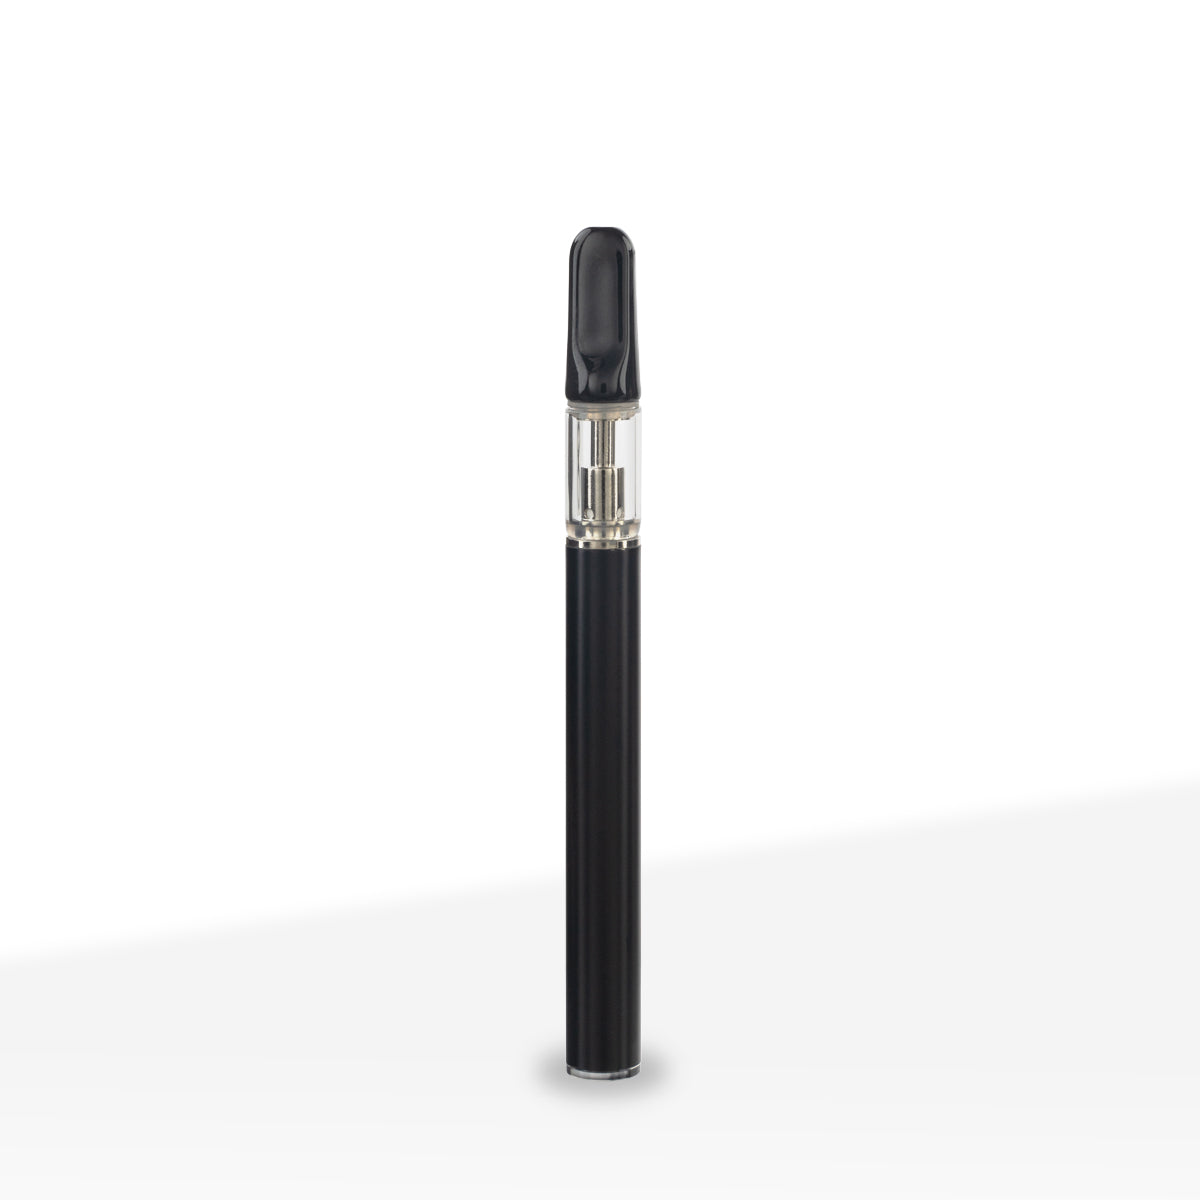 0.5ml Disposable Buttonless Vape Pen Black - 100 Count